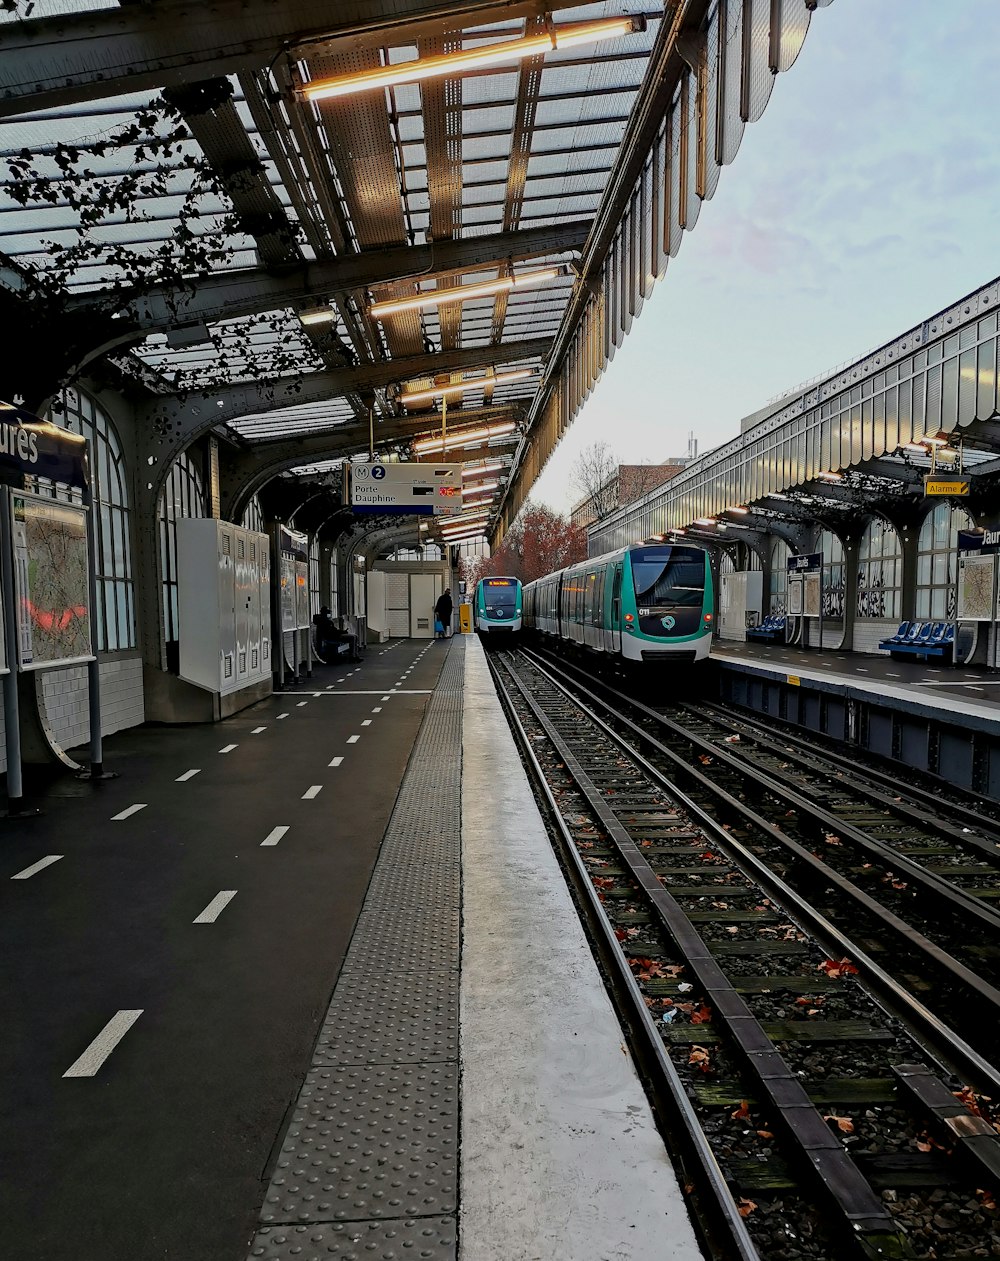 Treno blu e bianco sulla stazione ferroviaria durante il giorno